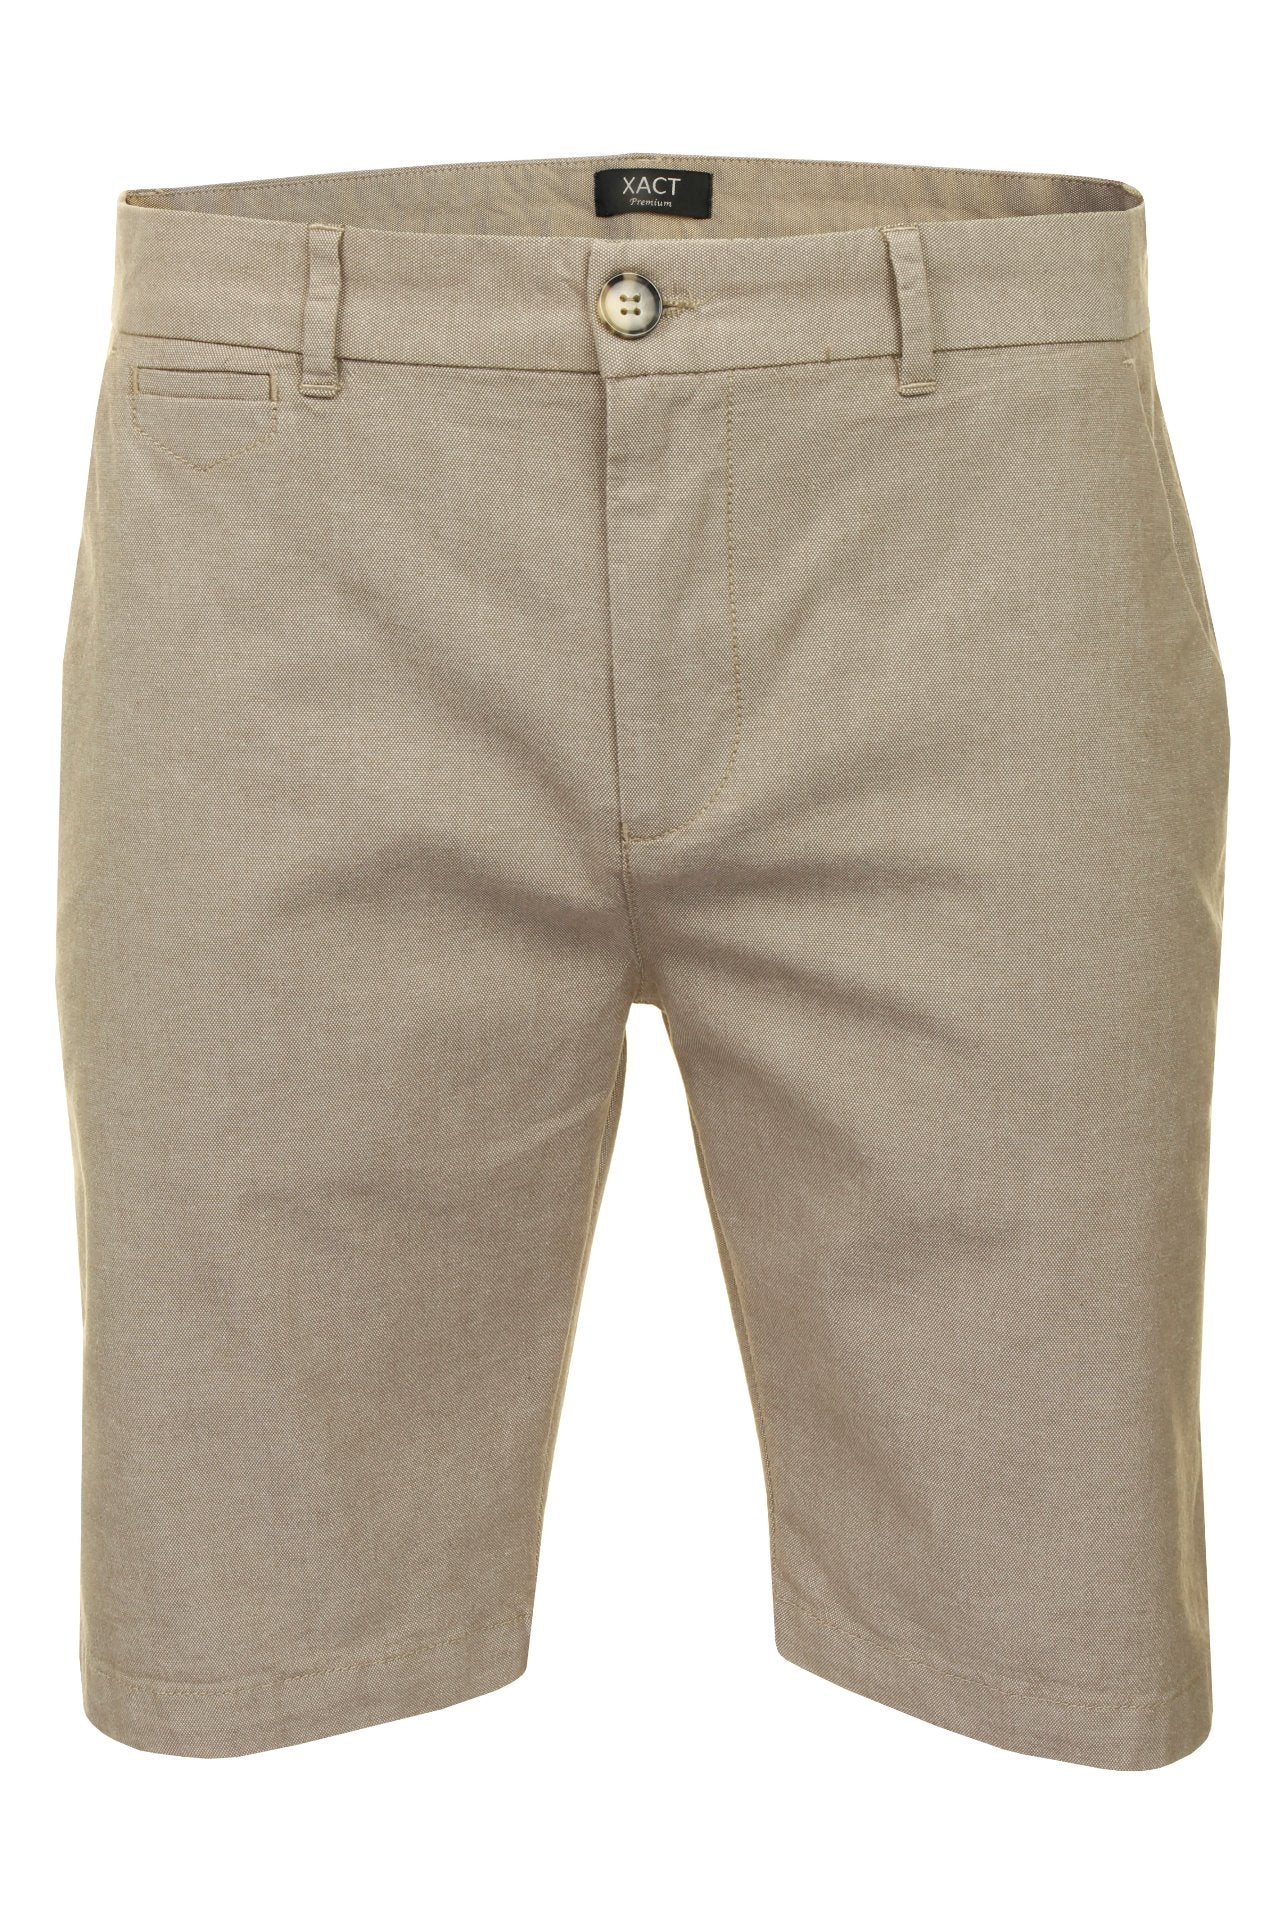 Xact Men's Premium Tailored Oxford Chino Shorts-Main Image